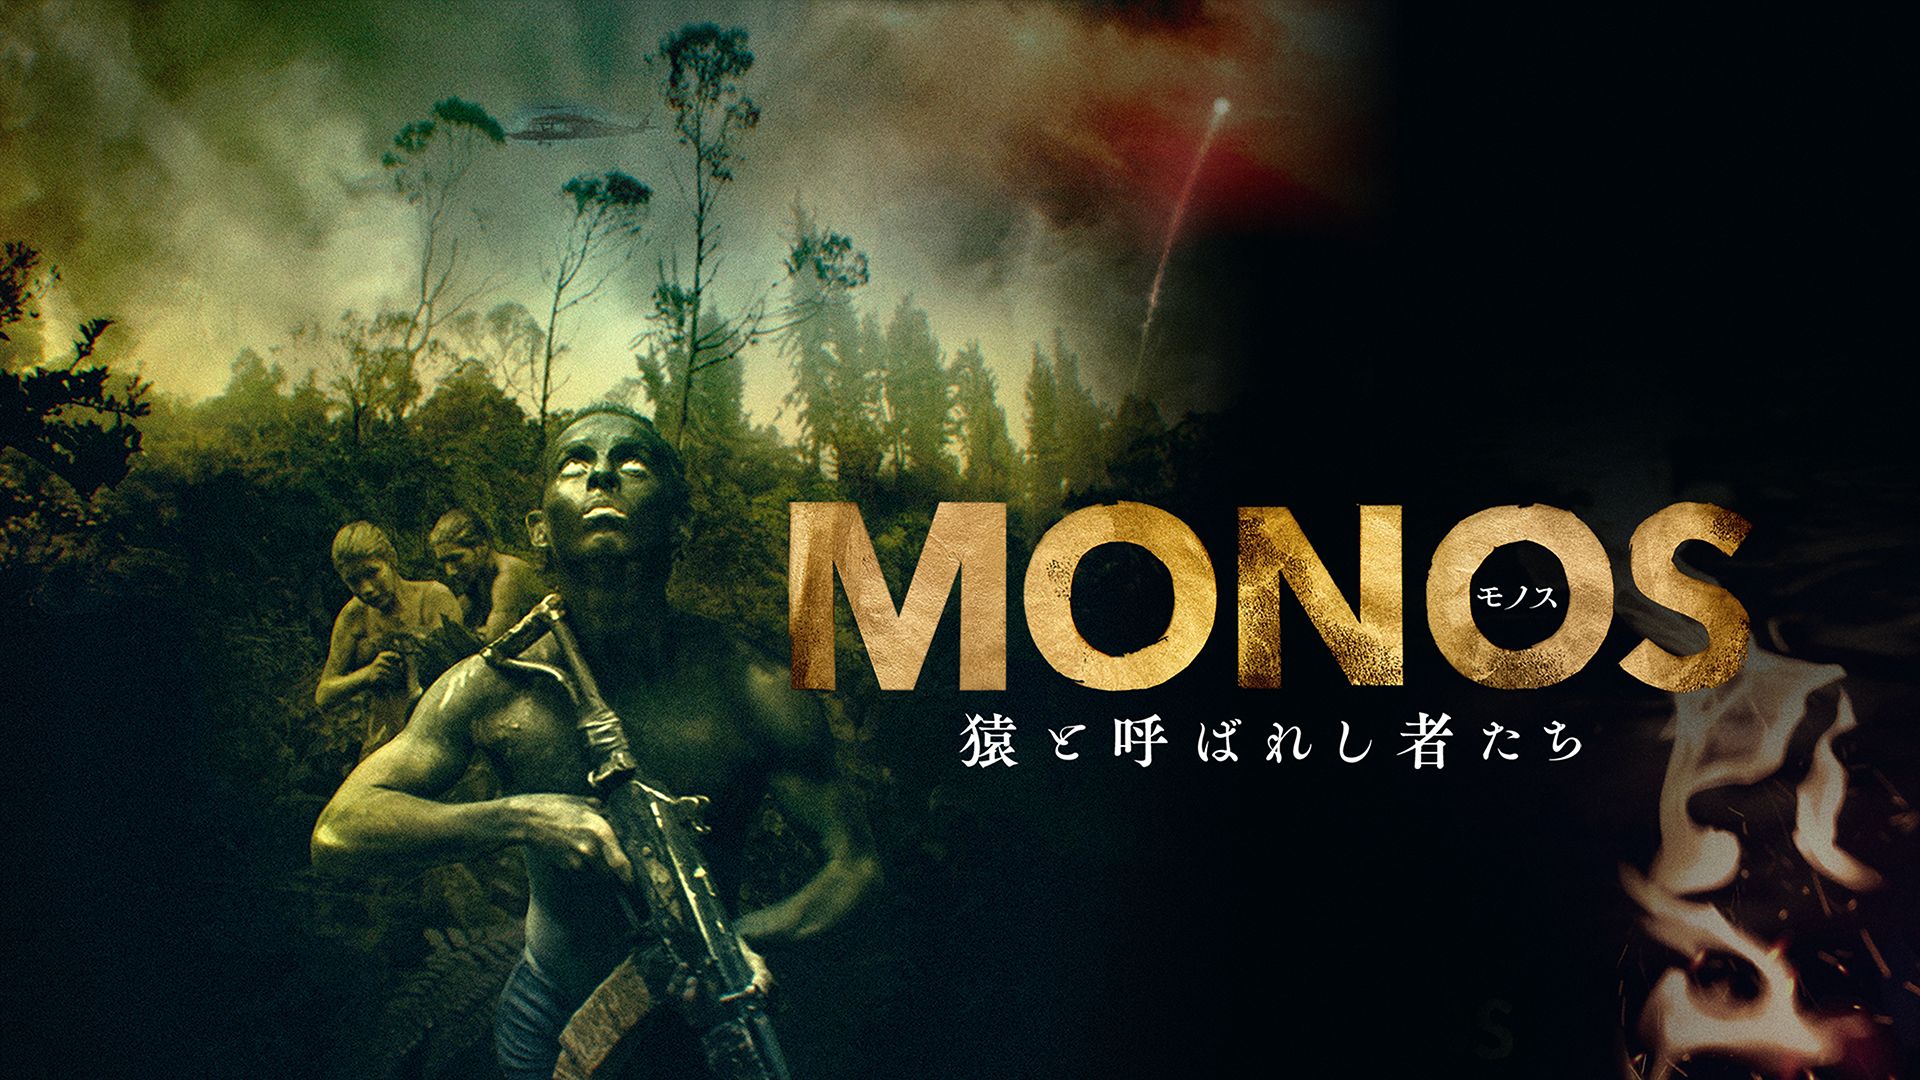 MONOS〜モノス猿と呼ばれし者たち